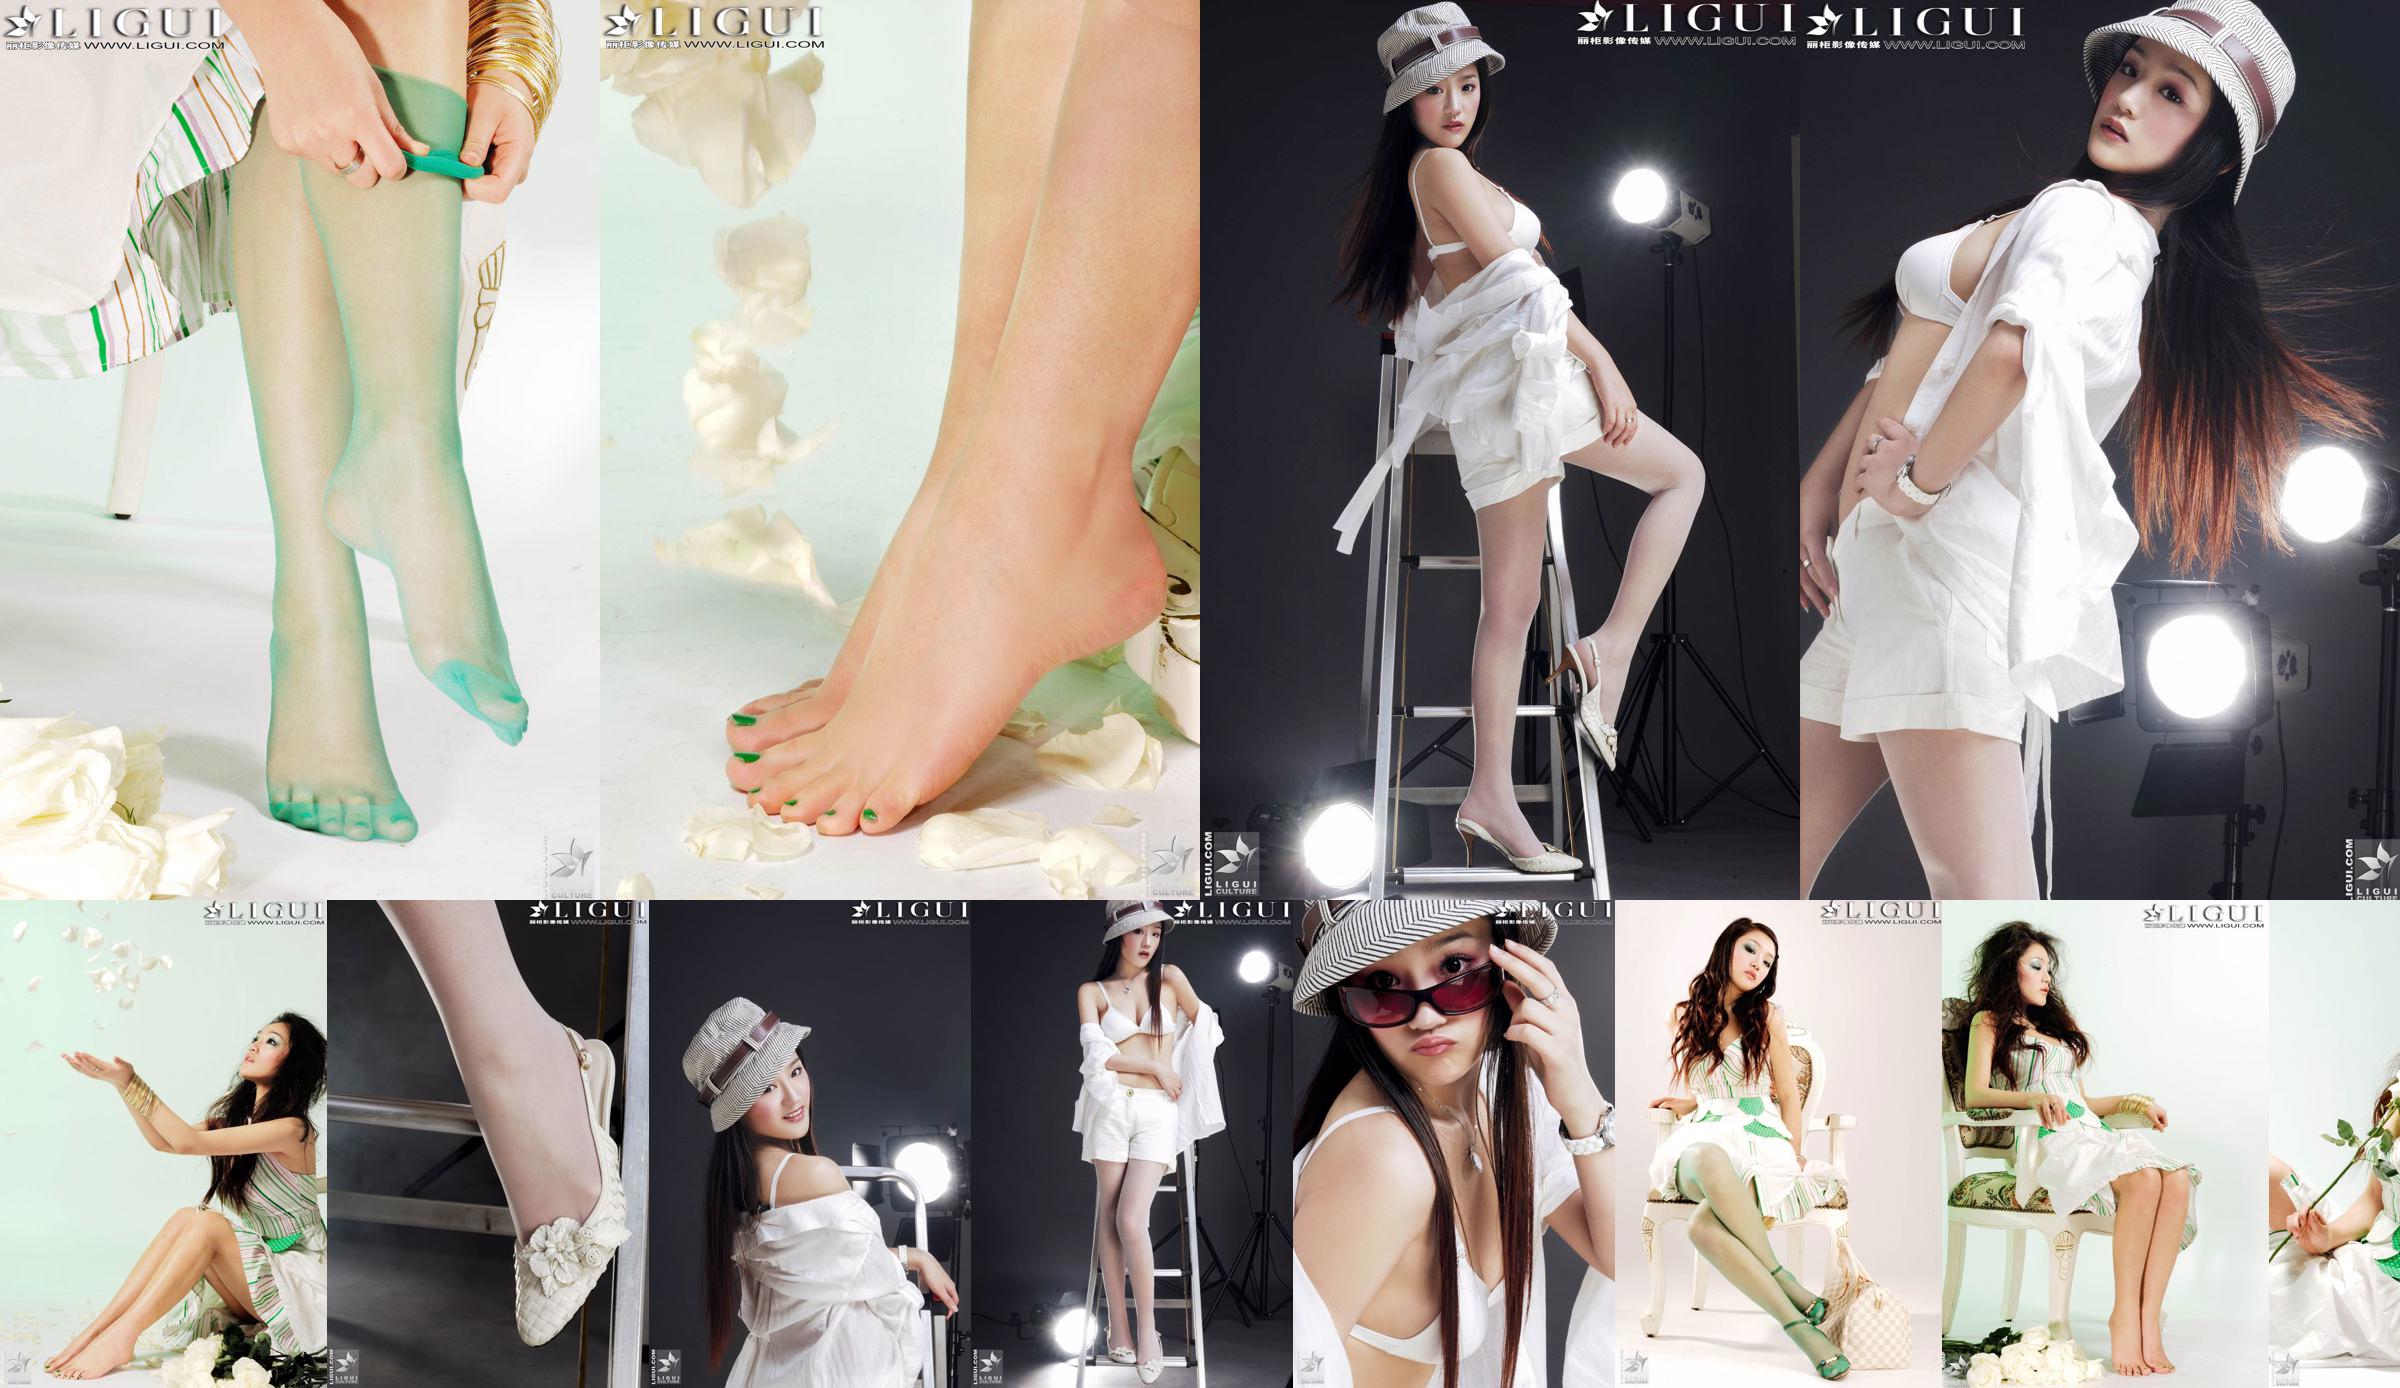 [丽柜贵足LiGui]モデル張景燕の美しい脚と絹の足の「ファッショナブルな足」の写真 No.71748a ページ4